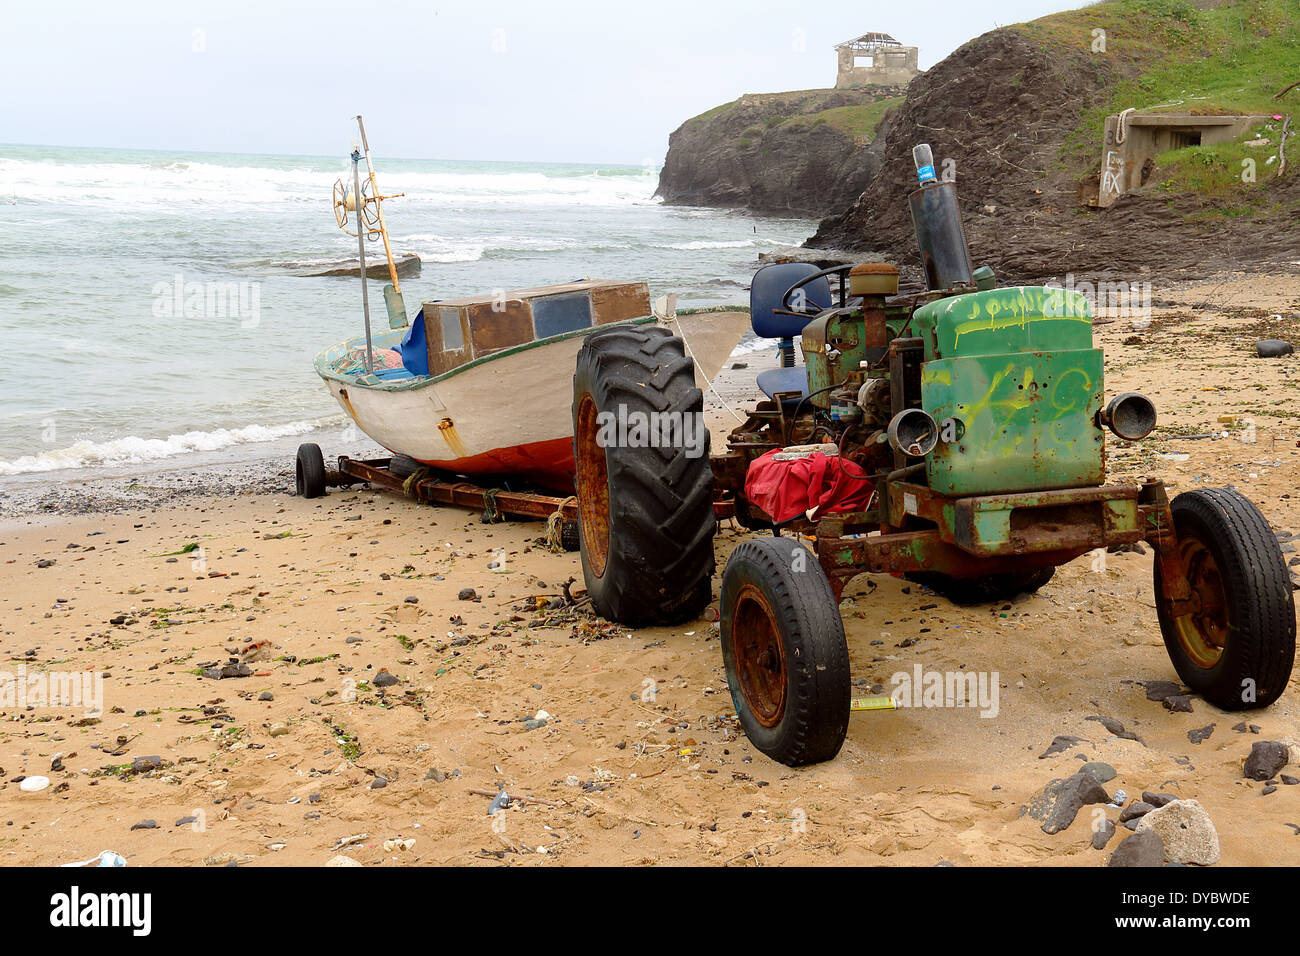 L'image d'un tracteur rouillé avec un bateau sur la remorque Banque D'Images